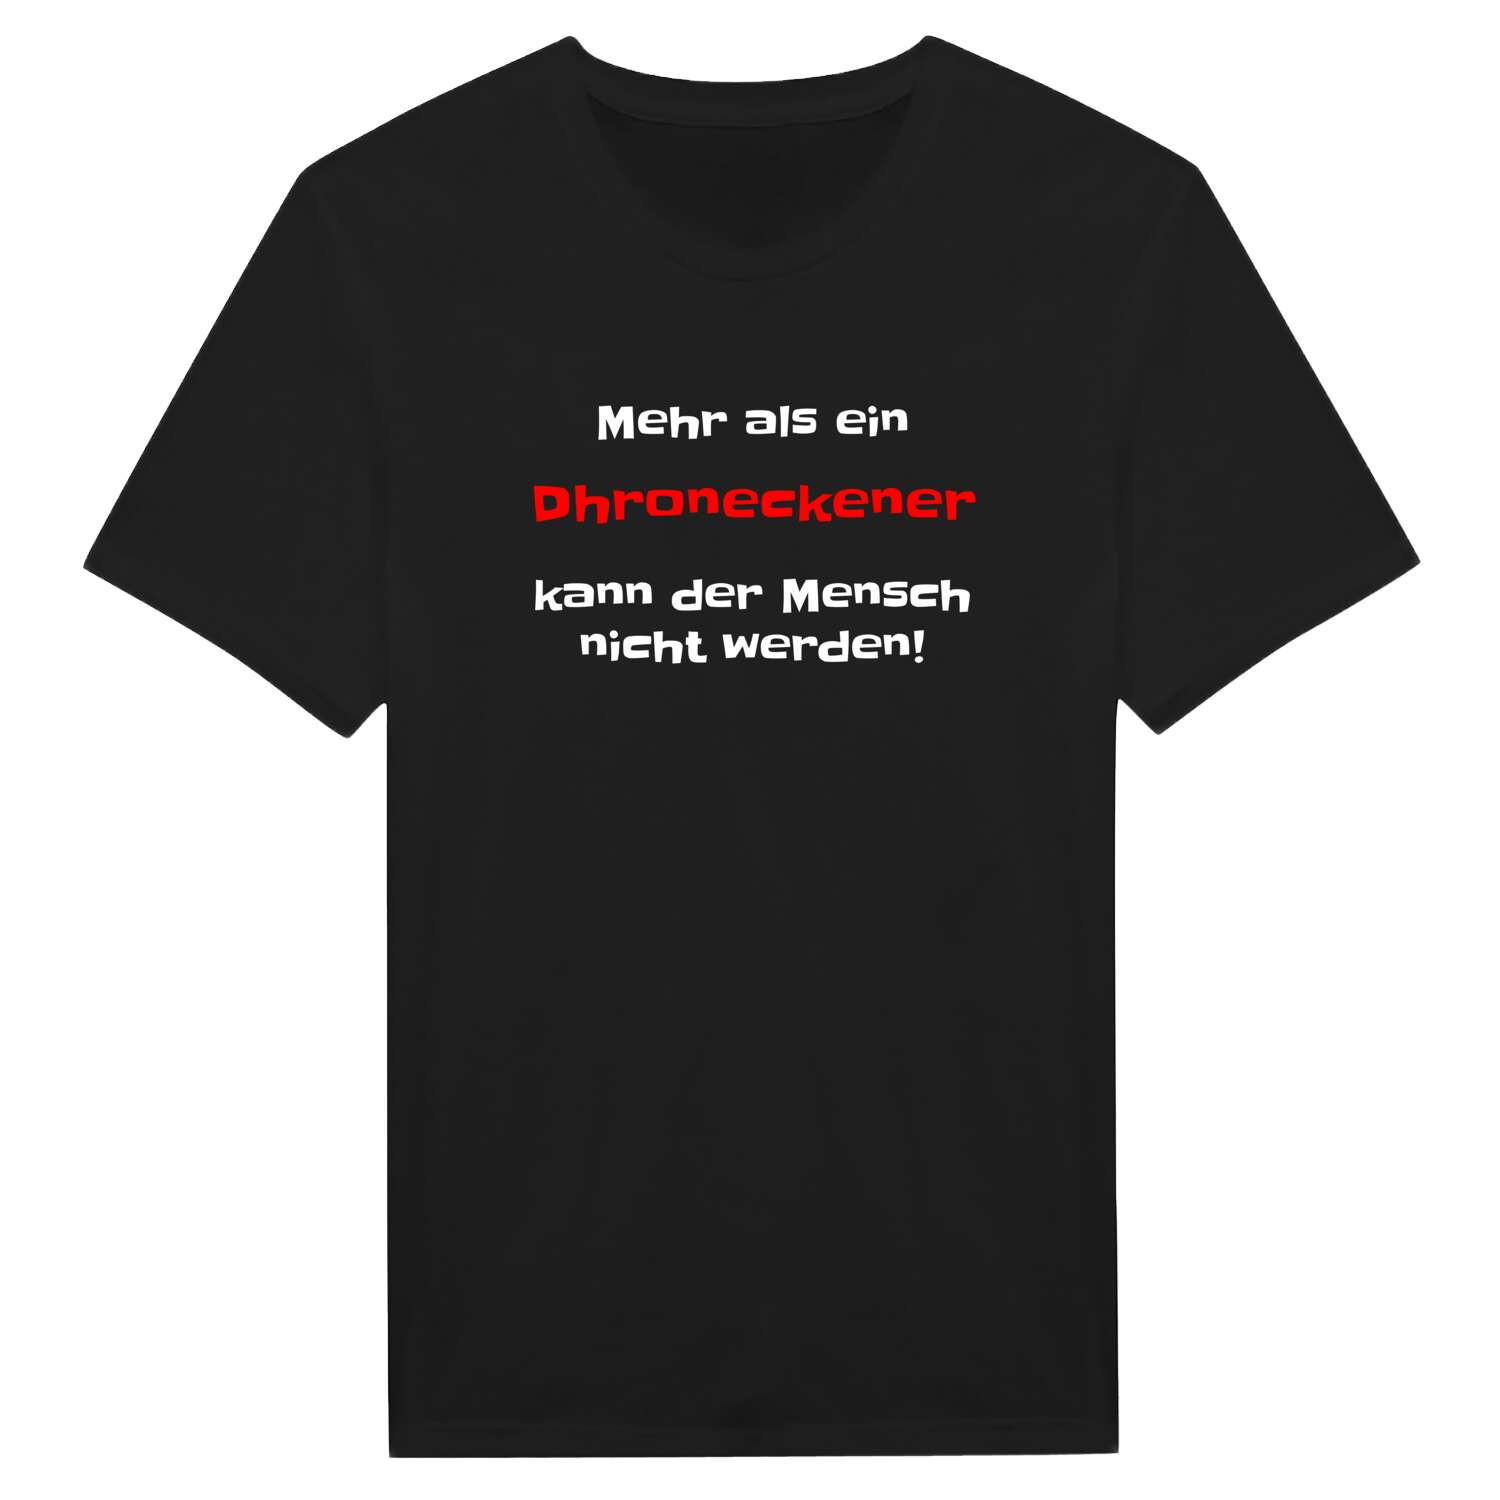 Dhronecken T-Shirt »Mehr als ein«